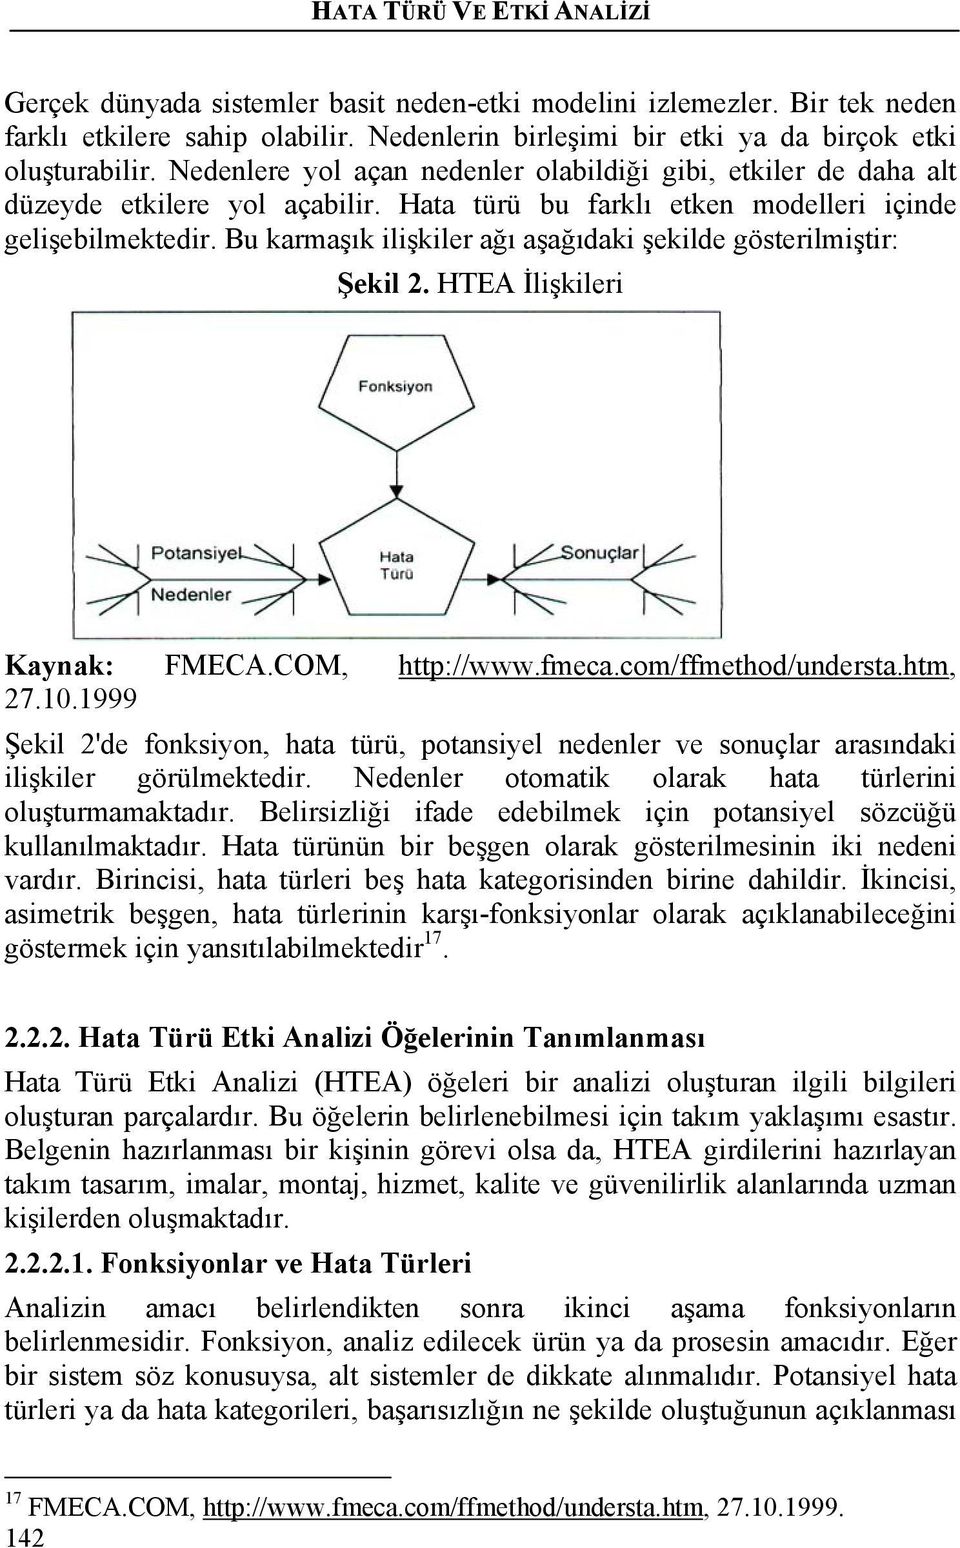 Bu karmaşık ilişkiler ağı aşağıdaki şekilde gösterilmiştir: Şekil 2. HTEA İlişkileri Kaynak: FMECA.COM, http://www.fmeca.com/ffmethod/understa.htm, 27.10.